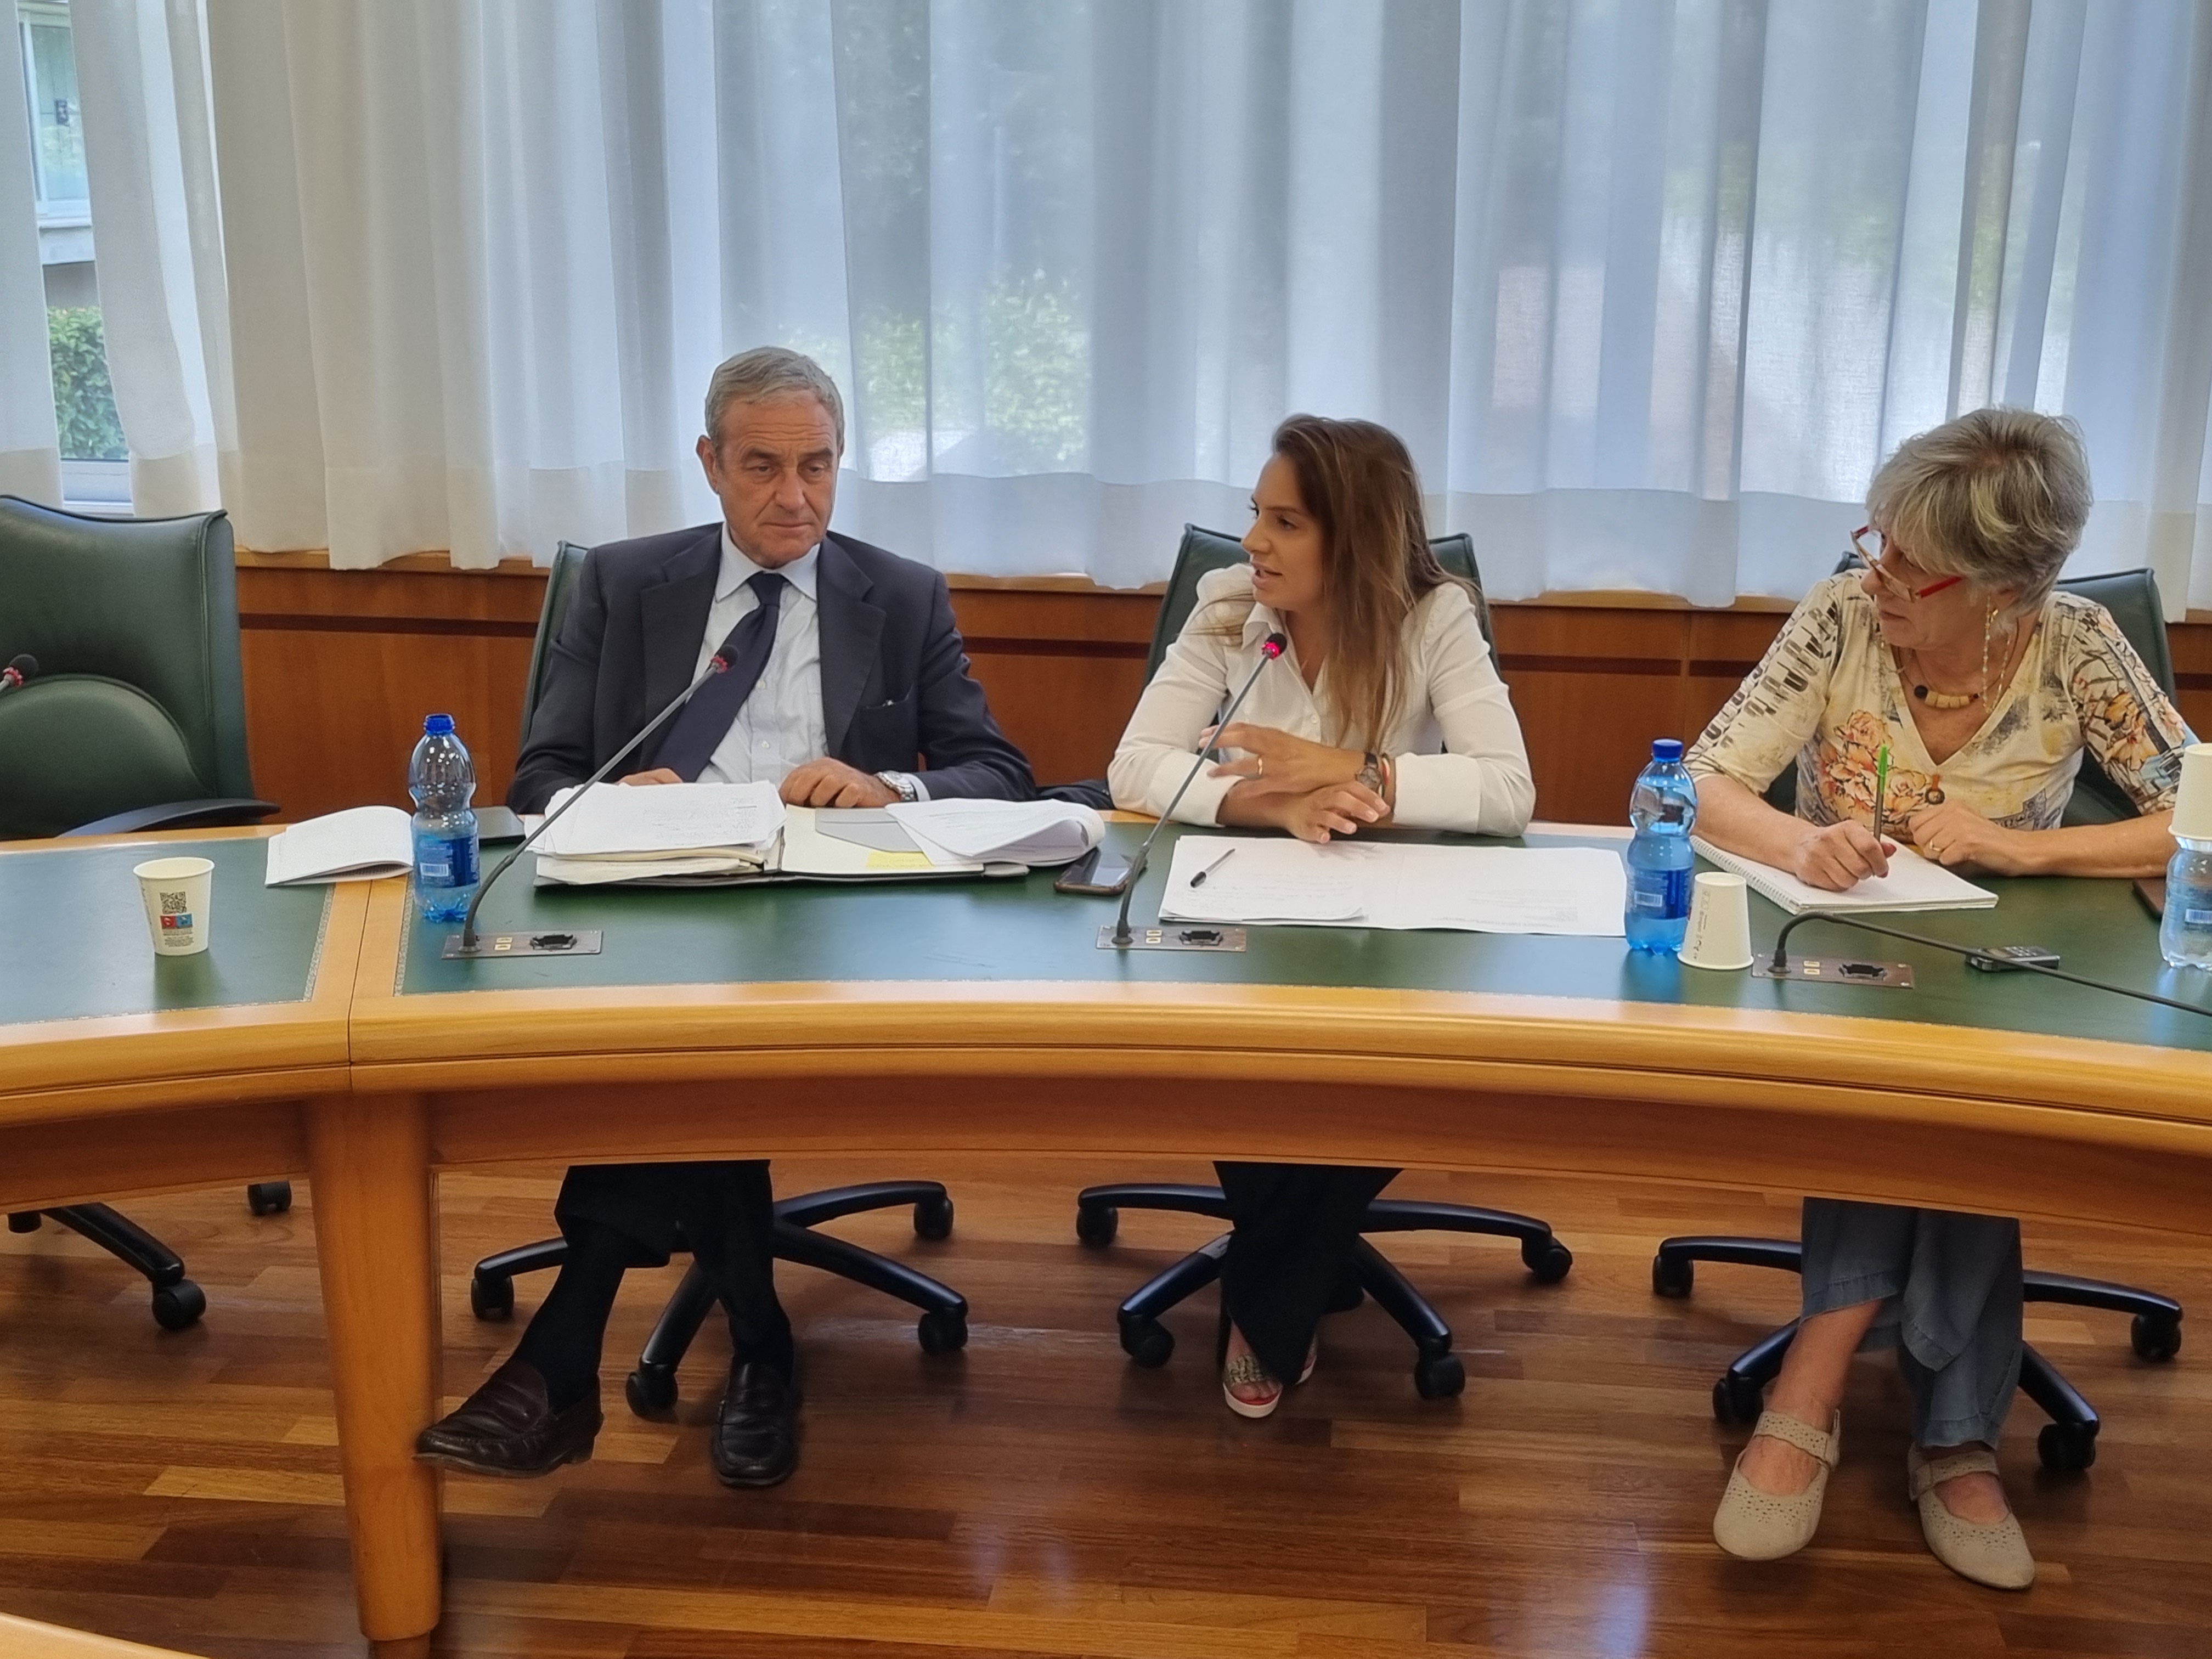 Consiglio Regionale del Lazio – Commissioni – Commissione speciale Semplificazione amministrativa – Notizie